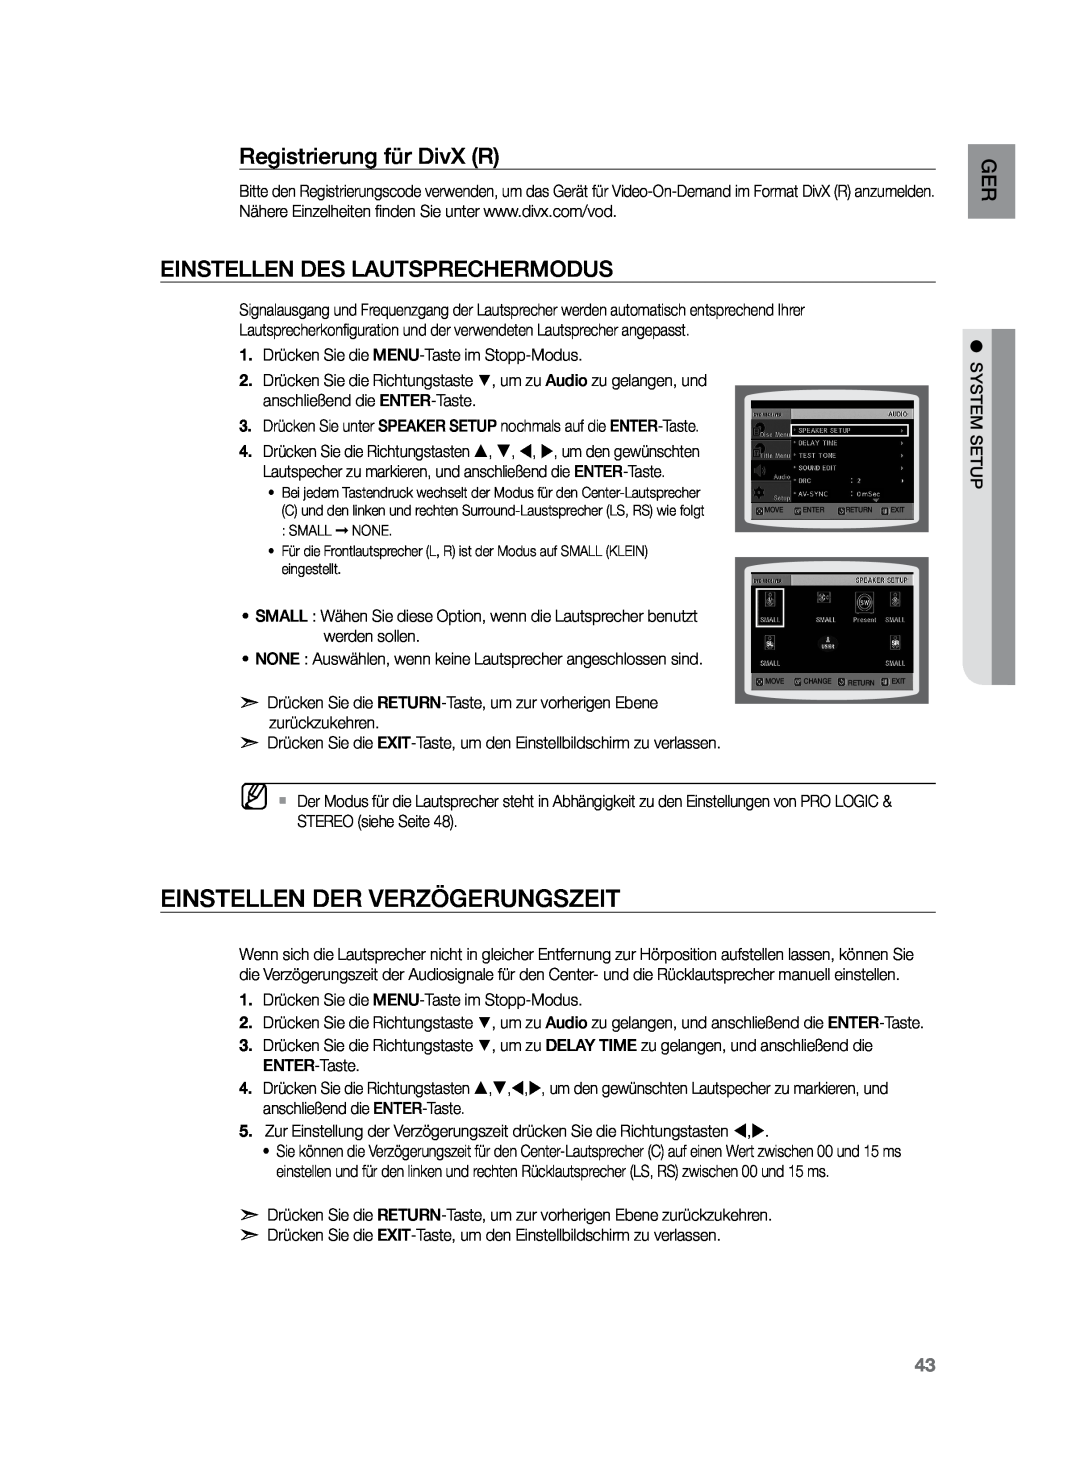 Samsung HT-Z120T/XEF manual Einstellen der Verzögerungszeit, Registrierung für DivX R, Einstellen des Lautsprechermodus 